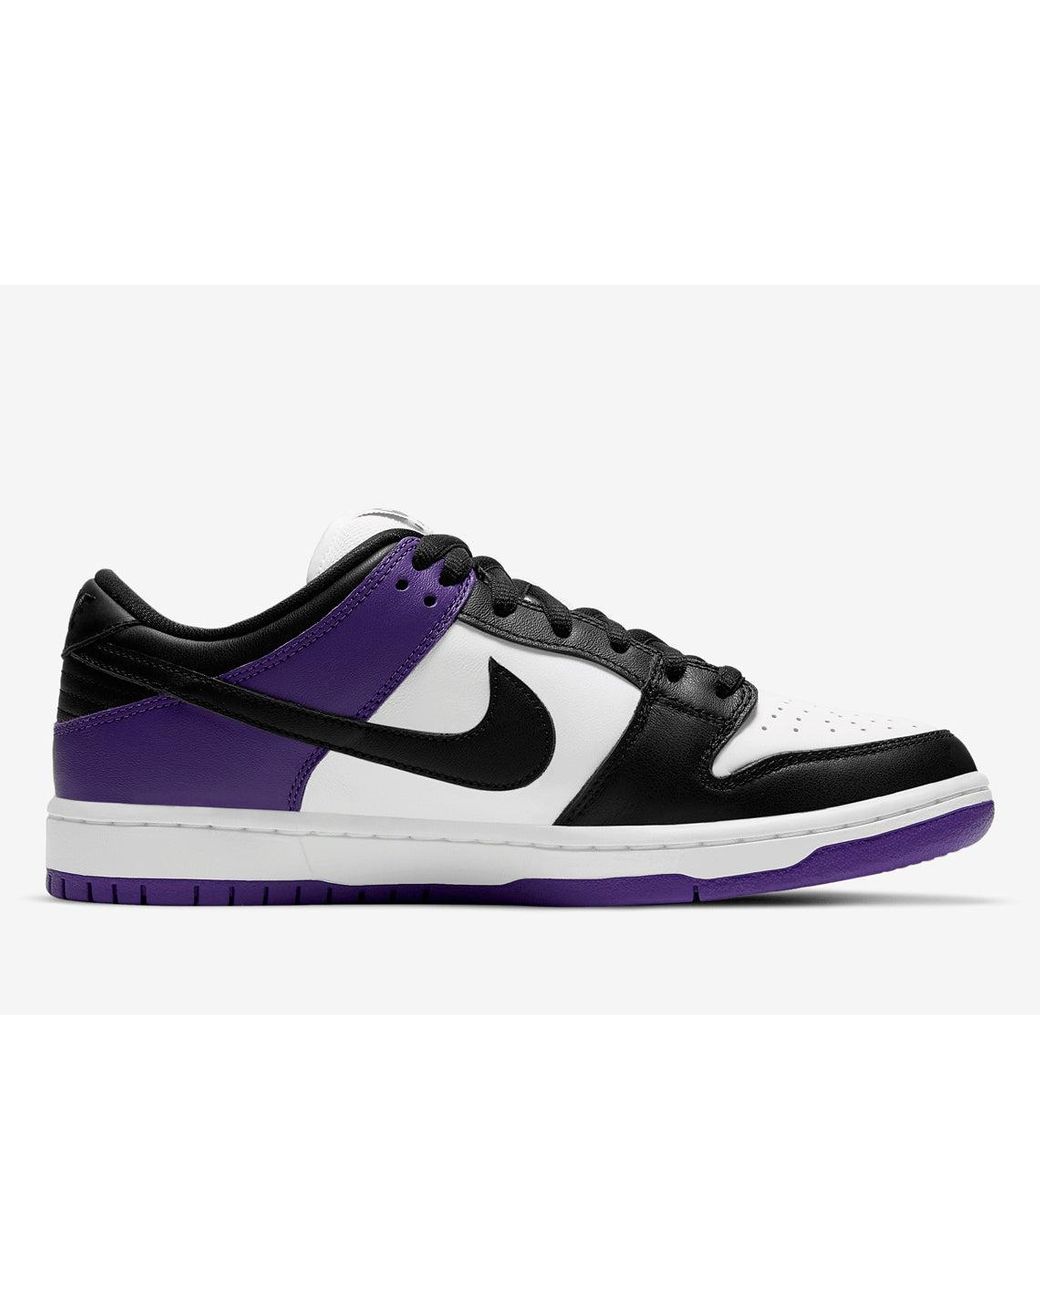 Nike Sb Dunk Low 'court Purple' in Black | Lyst